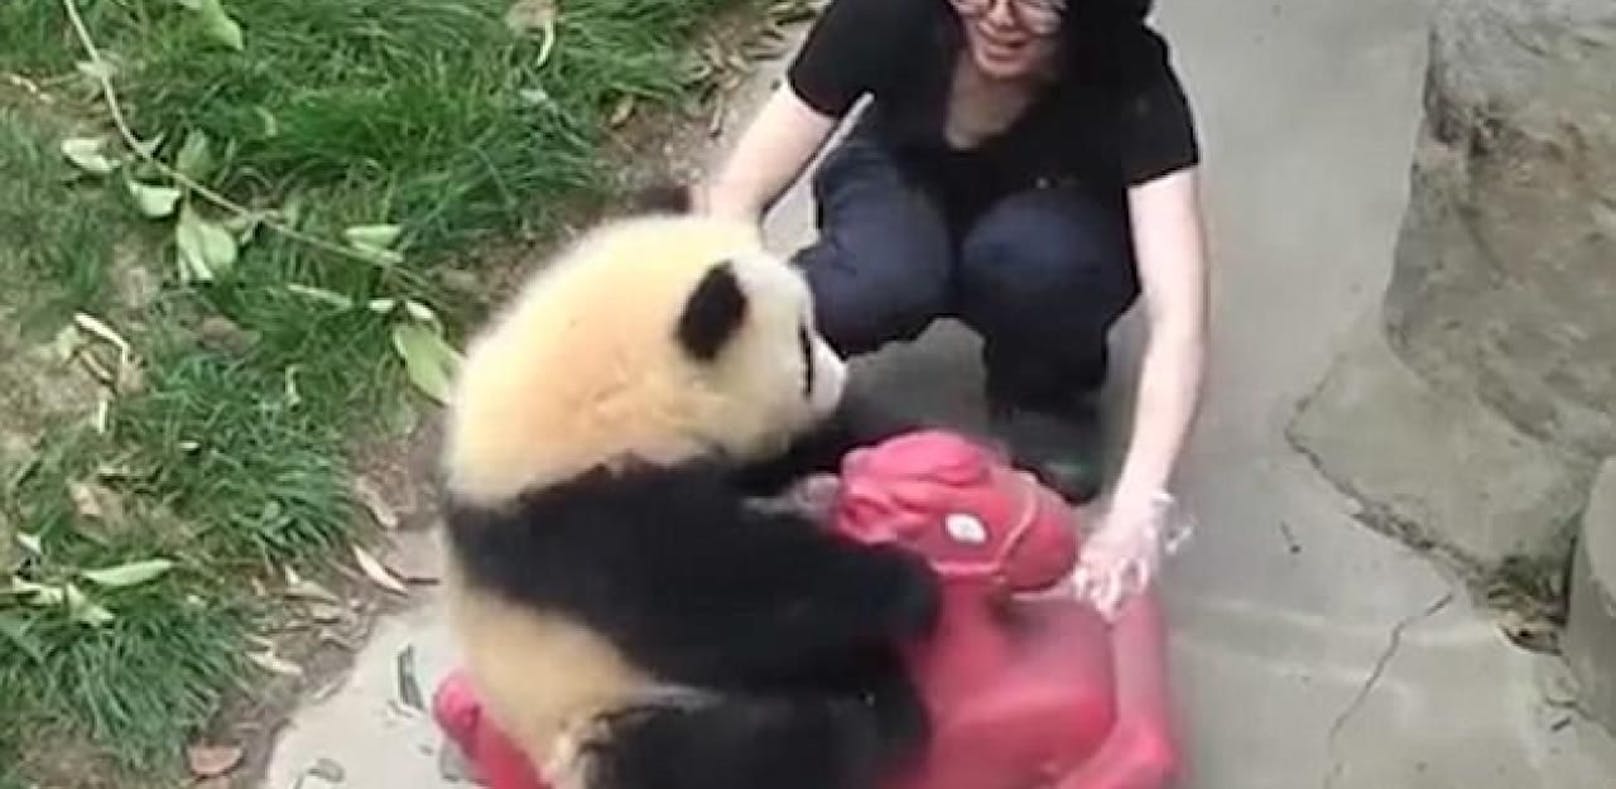 Süß: Baby-Panda liebt sein rosa Schaukelpferd